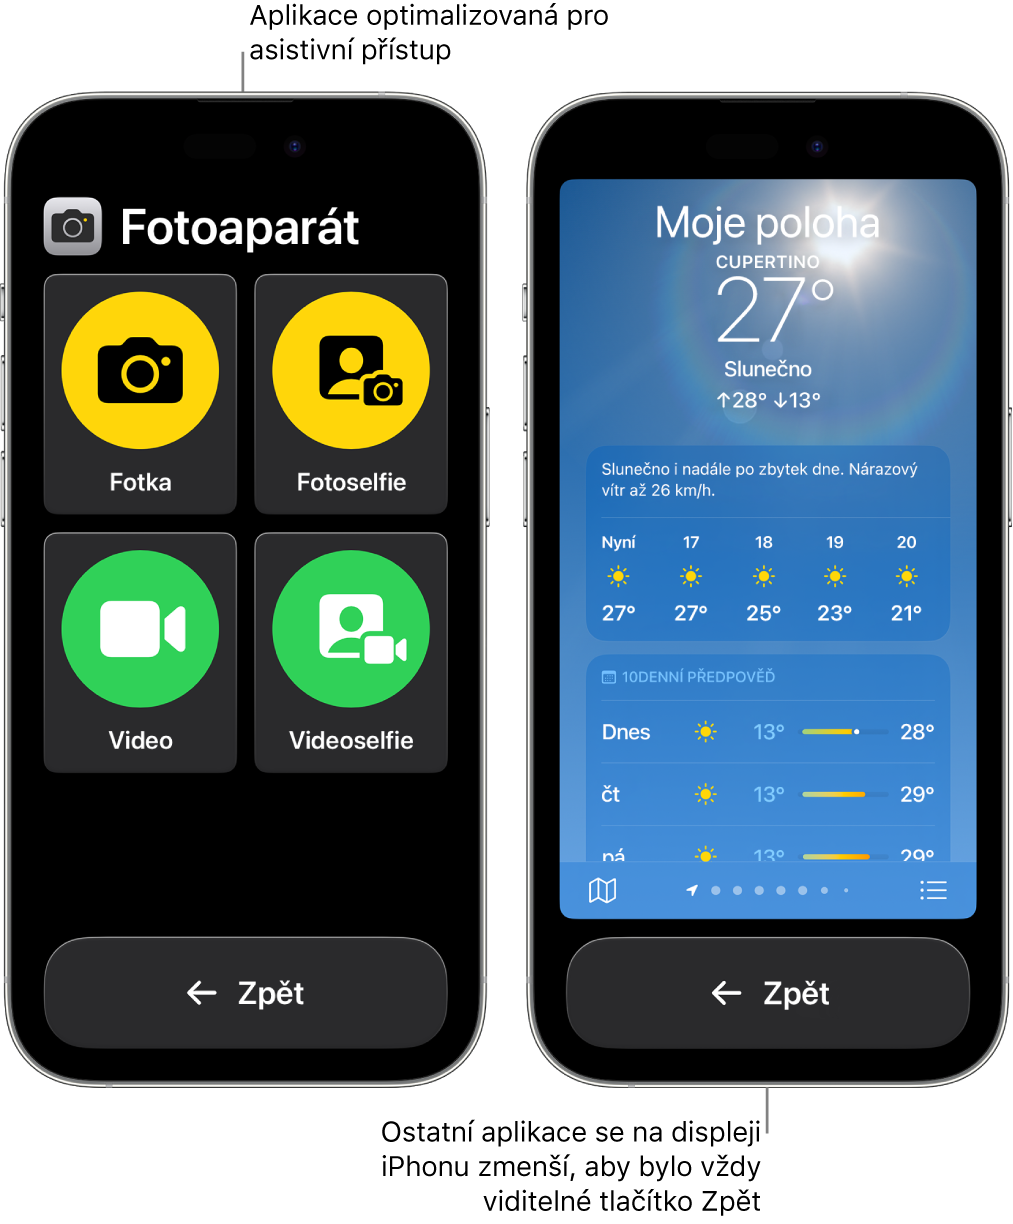 Dva iPhony v asistivním přístupu. Na prvním iPhonu je vidět aplikace s velkou mřížkou tlačítek navržená pro asistivní přístup. Na druhém iPhonu je zobrazená aplikace, která nebyla navržena pro asistivní přístup, a má standardní uživatelské rozhraní. Tato aplikace se na displeji zobrazuje menší a pod ní je zobrazené velké tlačítko Zpět.